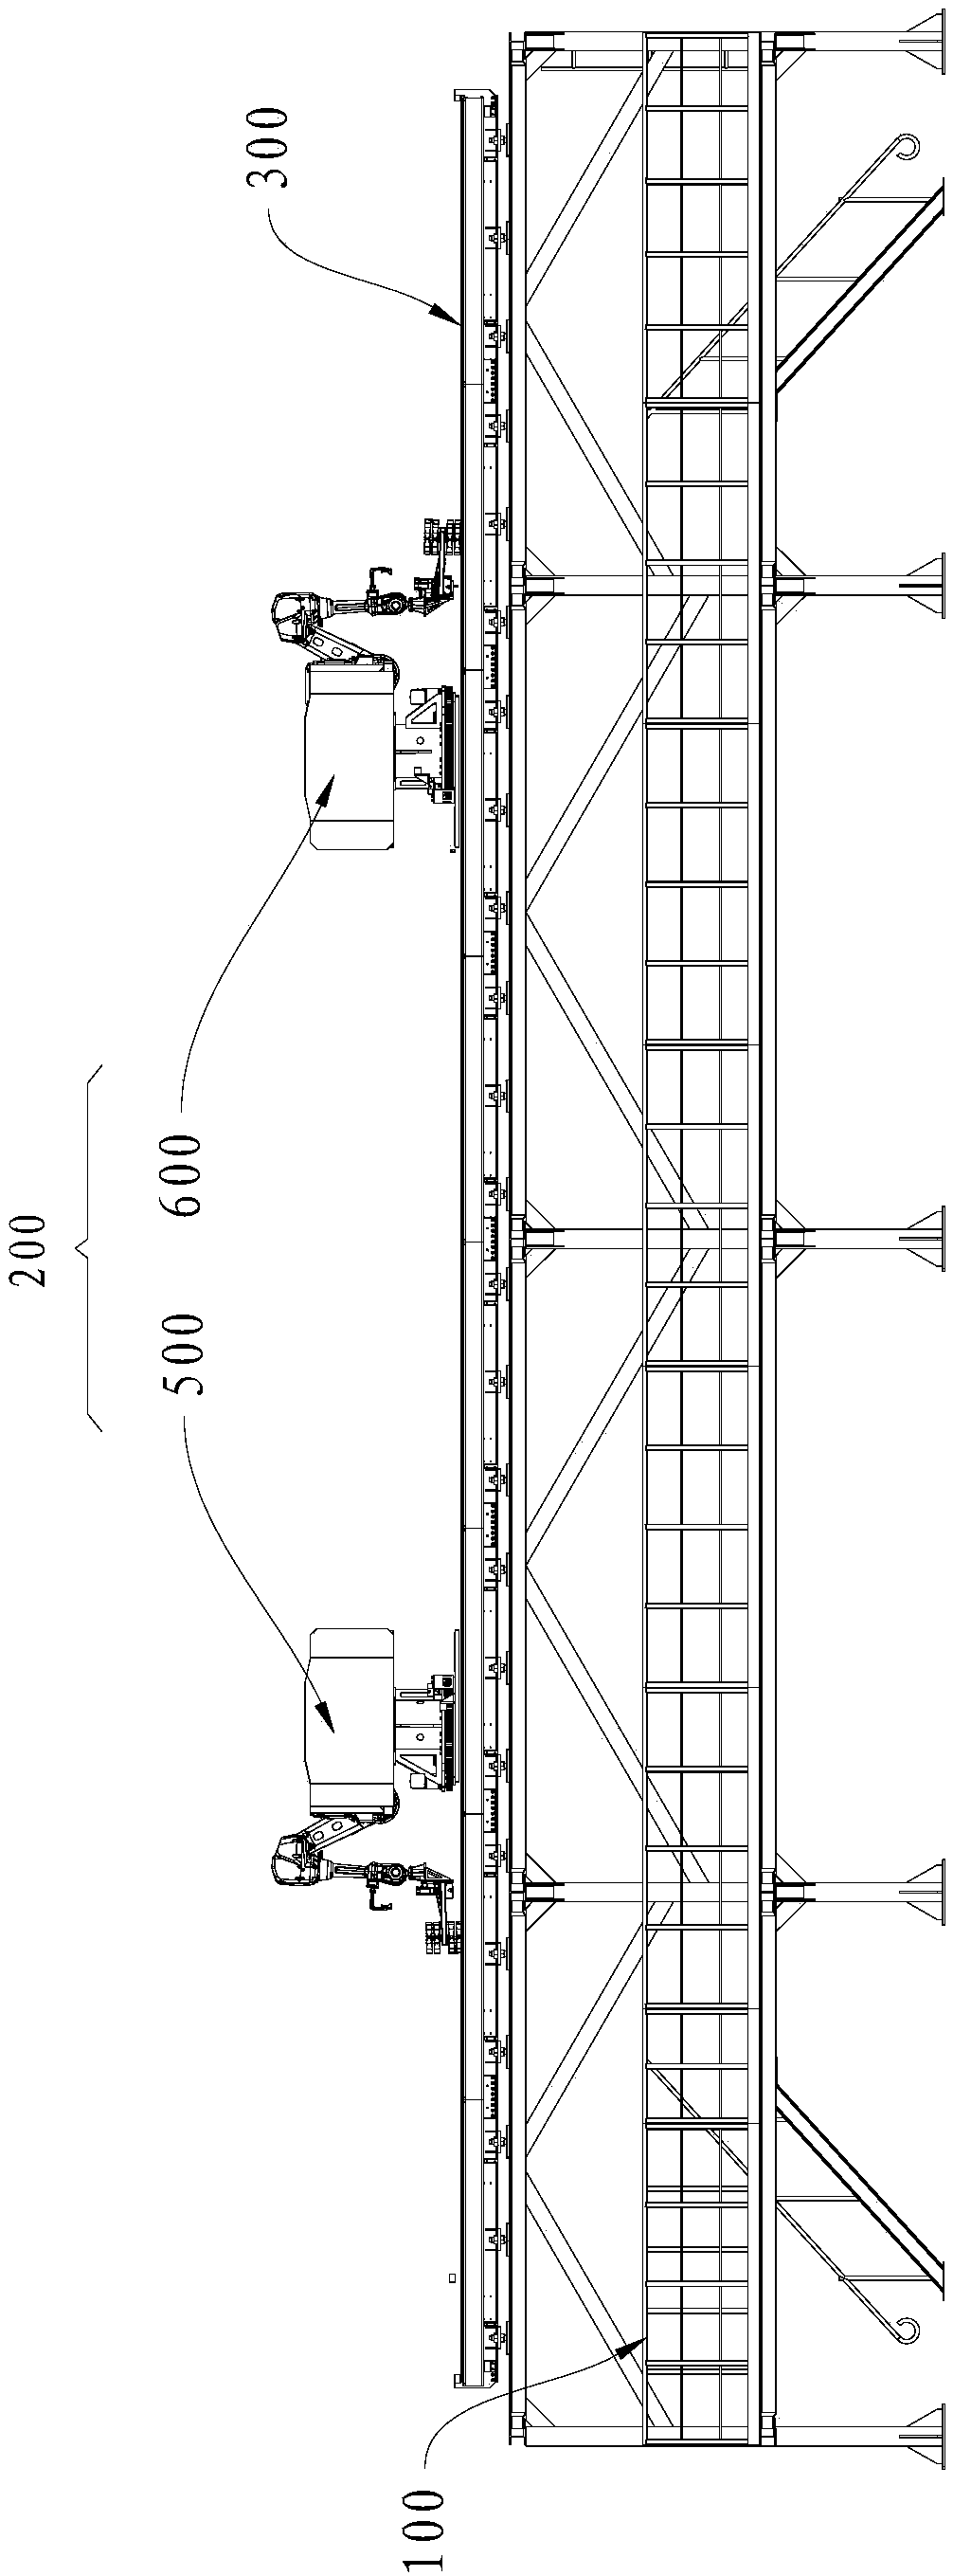 Servicing work method for locomotive roof